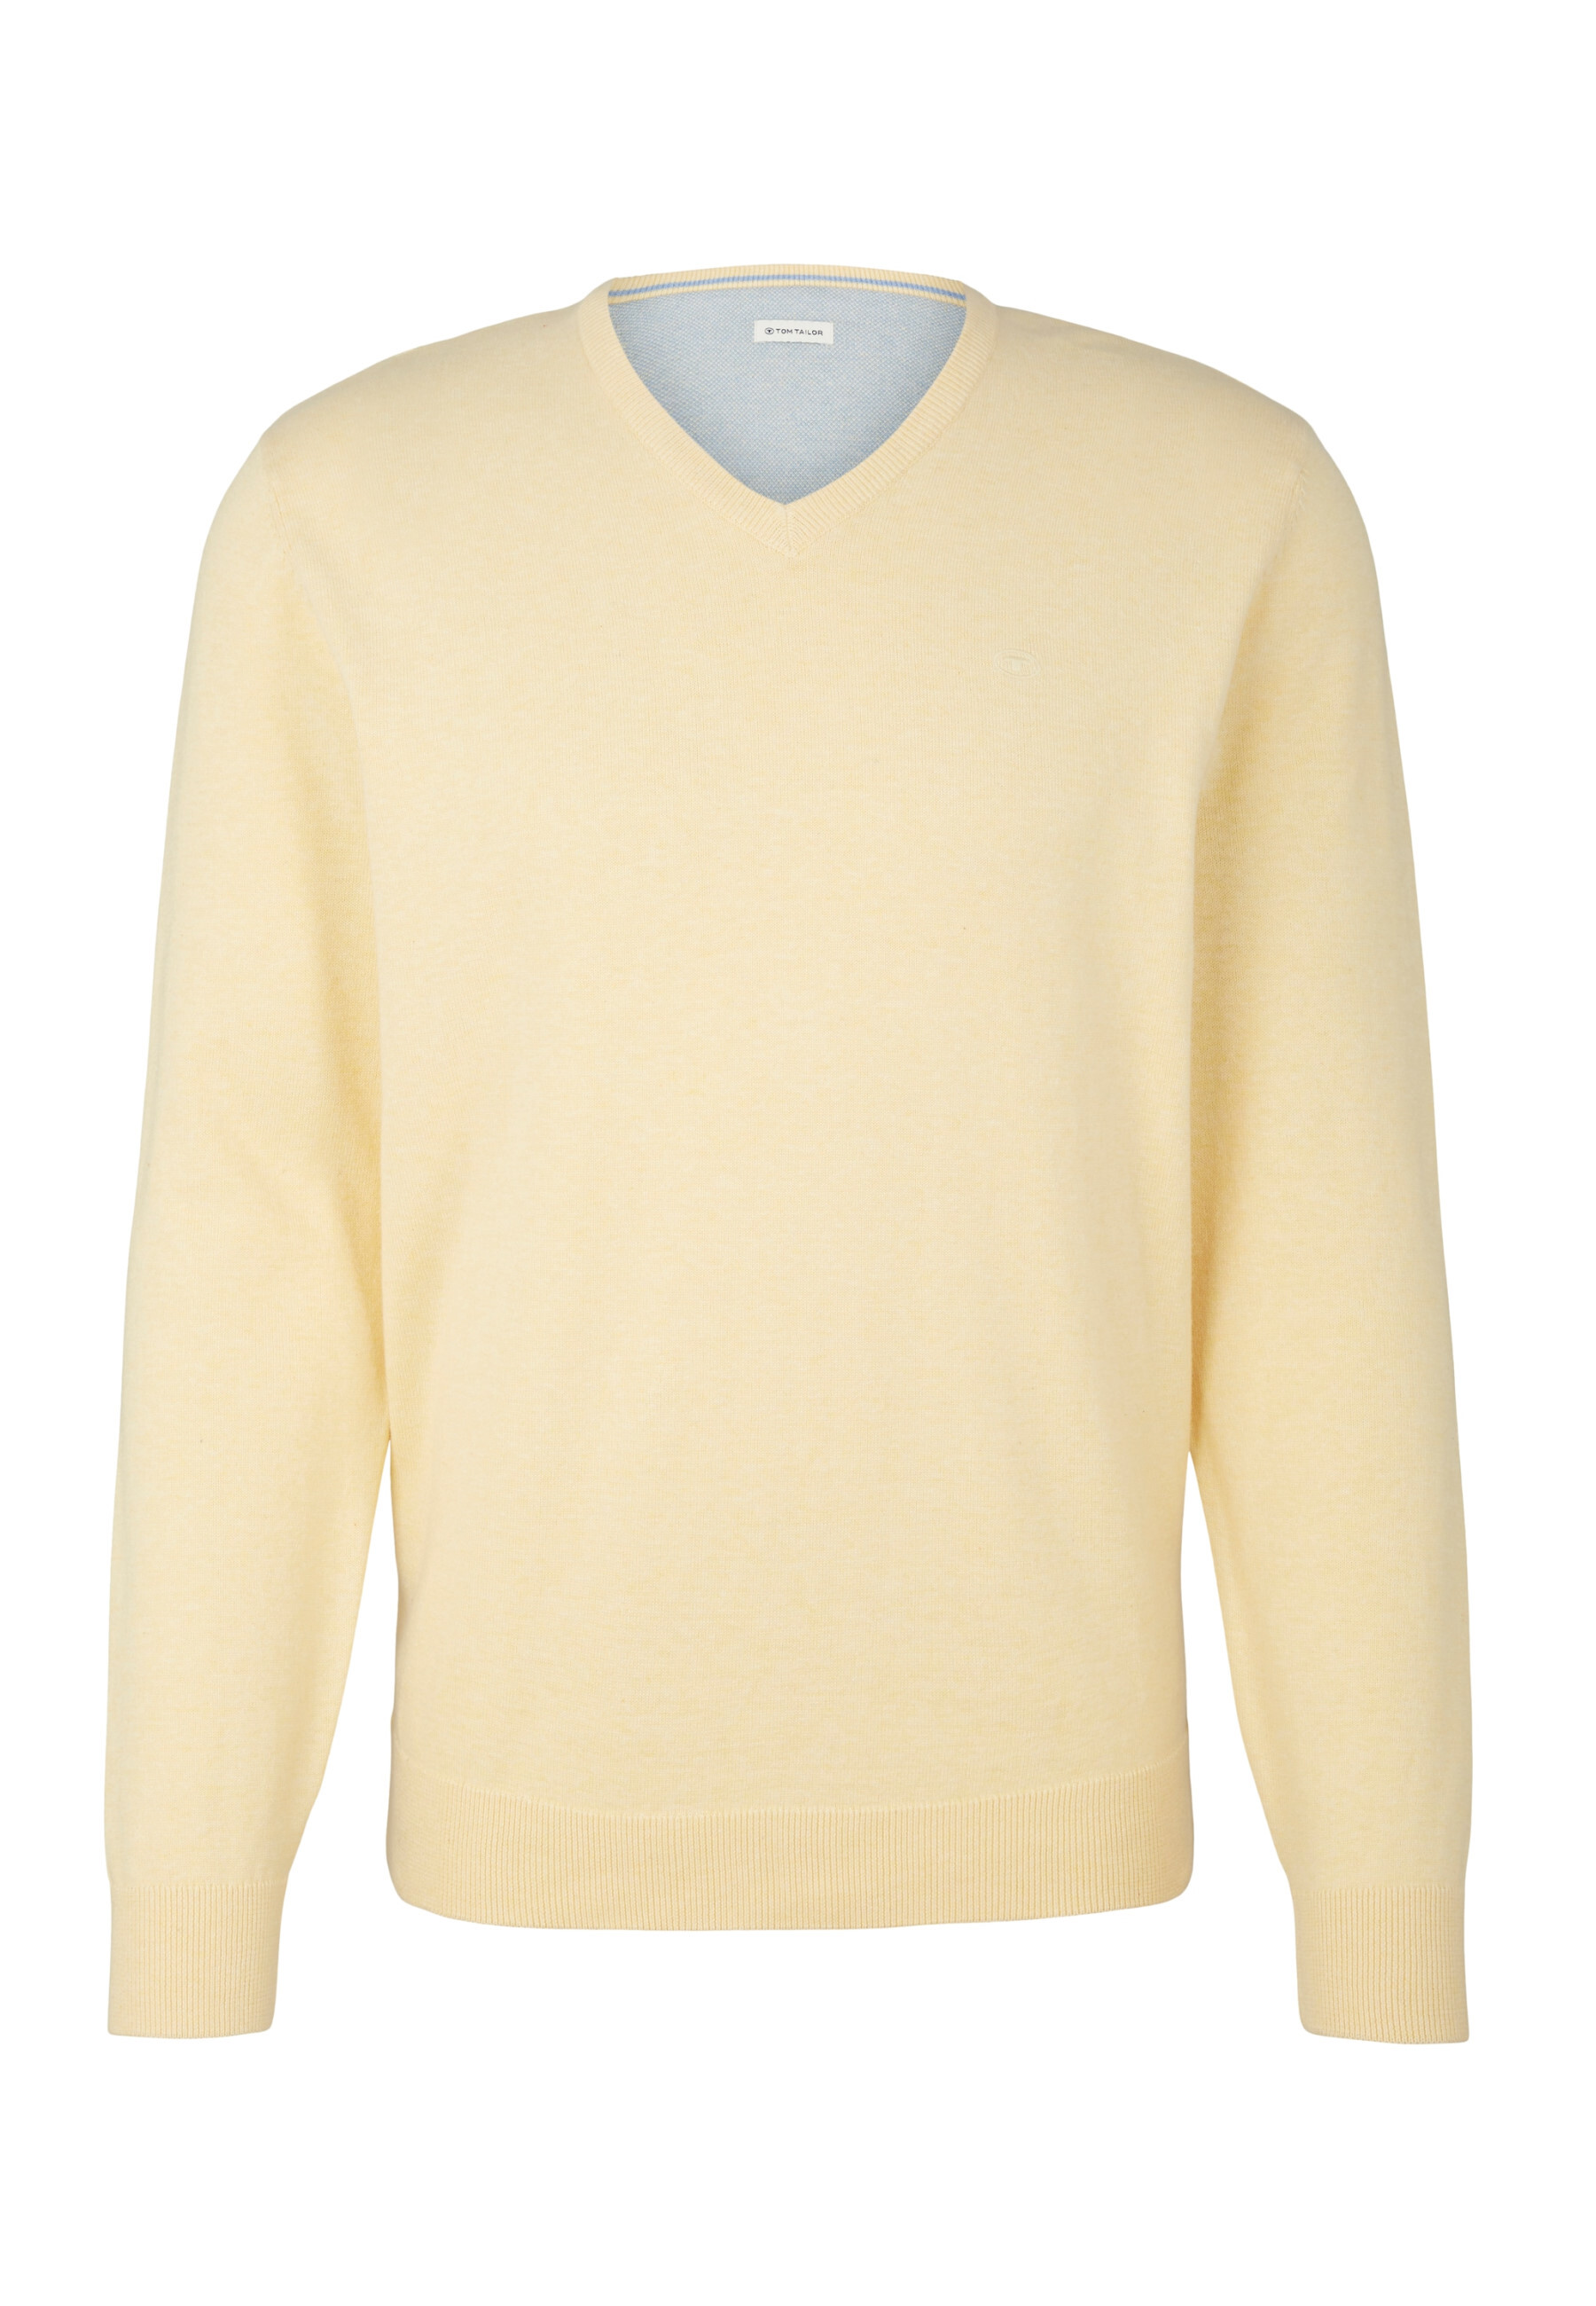 Пуловер Tom Tailor, желтый